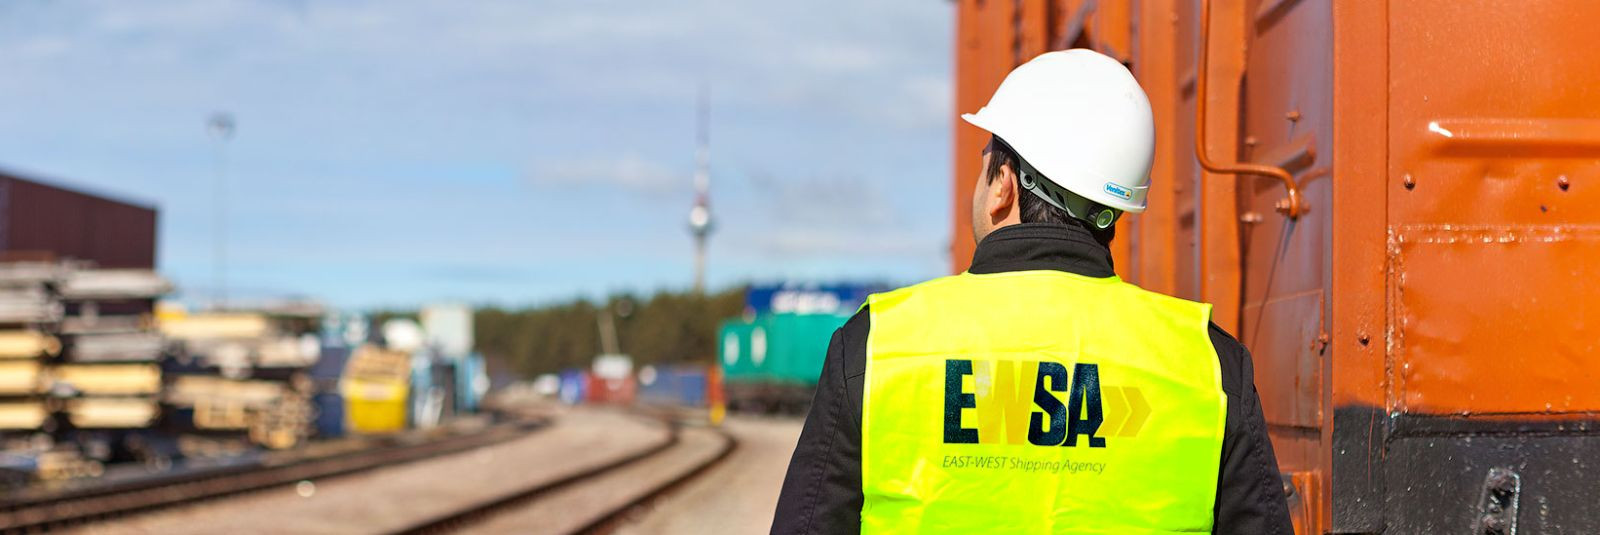 East-West Shipping Agency on ettevõte, mis on tuntud oma kvaliteetsete ja usaldusväärsete logistika- ja ekspedeerimisteenuste pakkumise poolest. Nende pikaajali